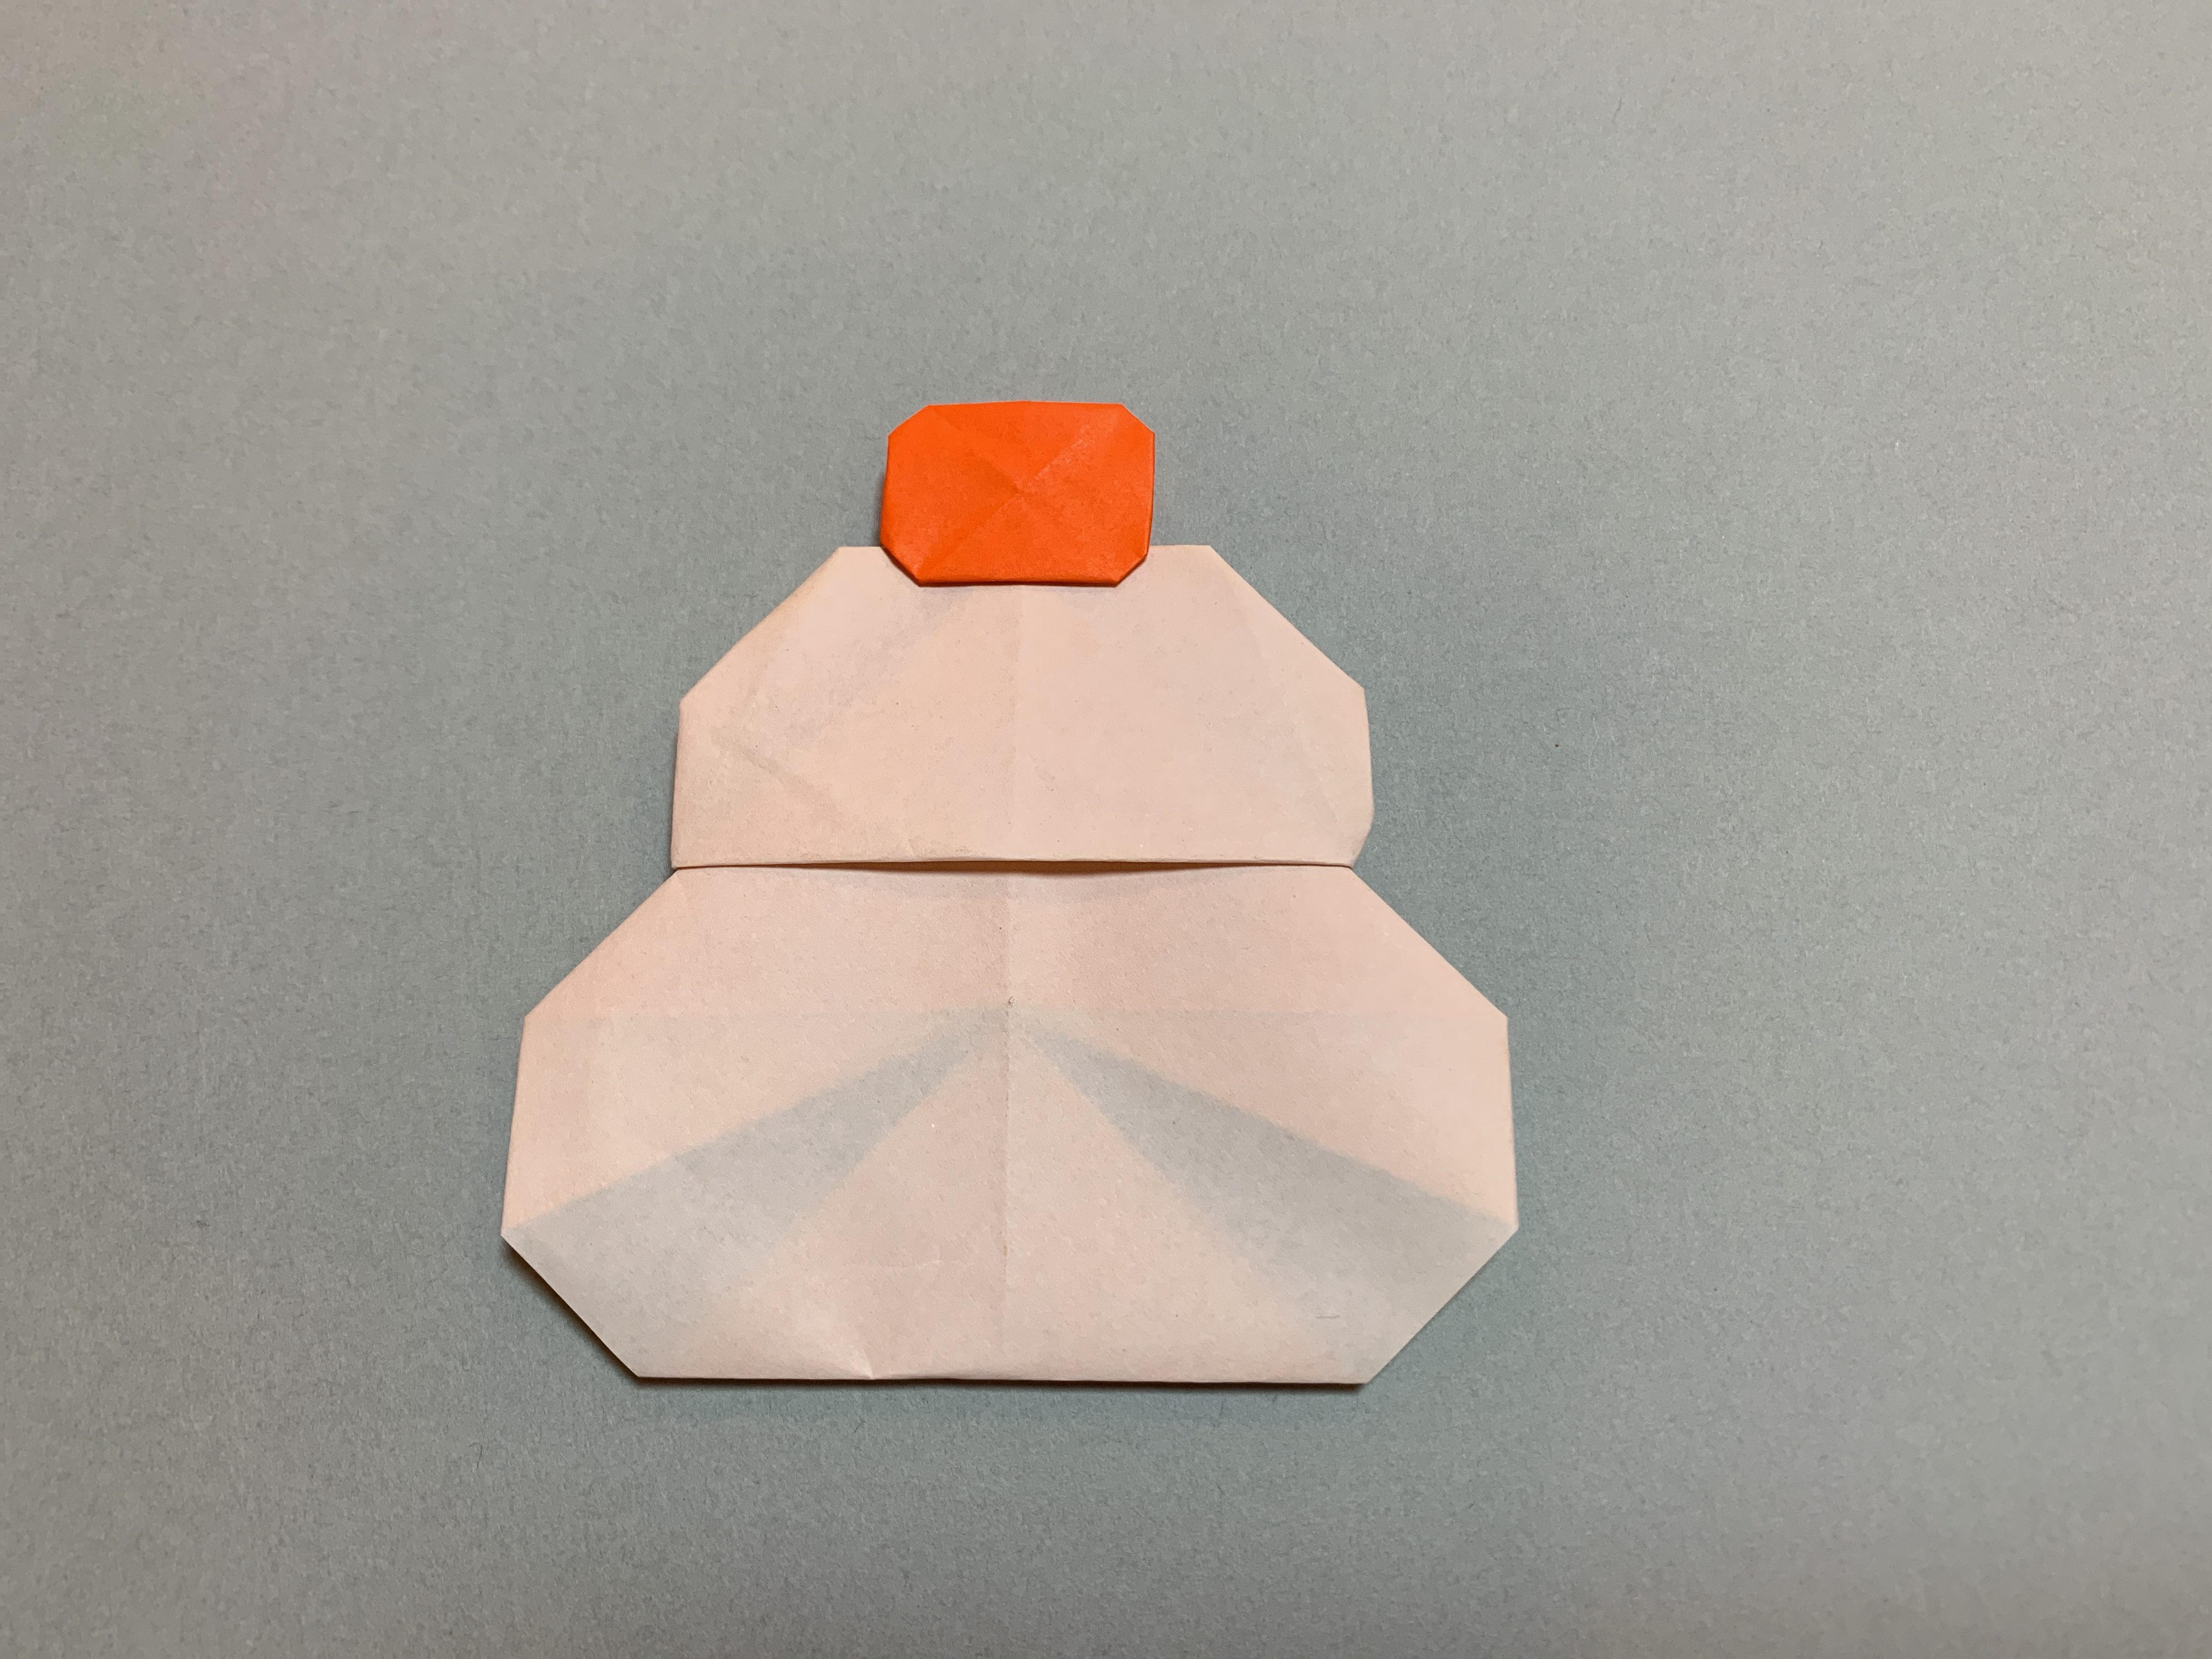 折り紙でお正月飾りを作ろう 3歳でもできる簡単なデザイン5選 子育てアルファ